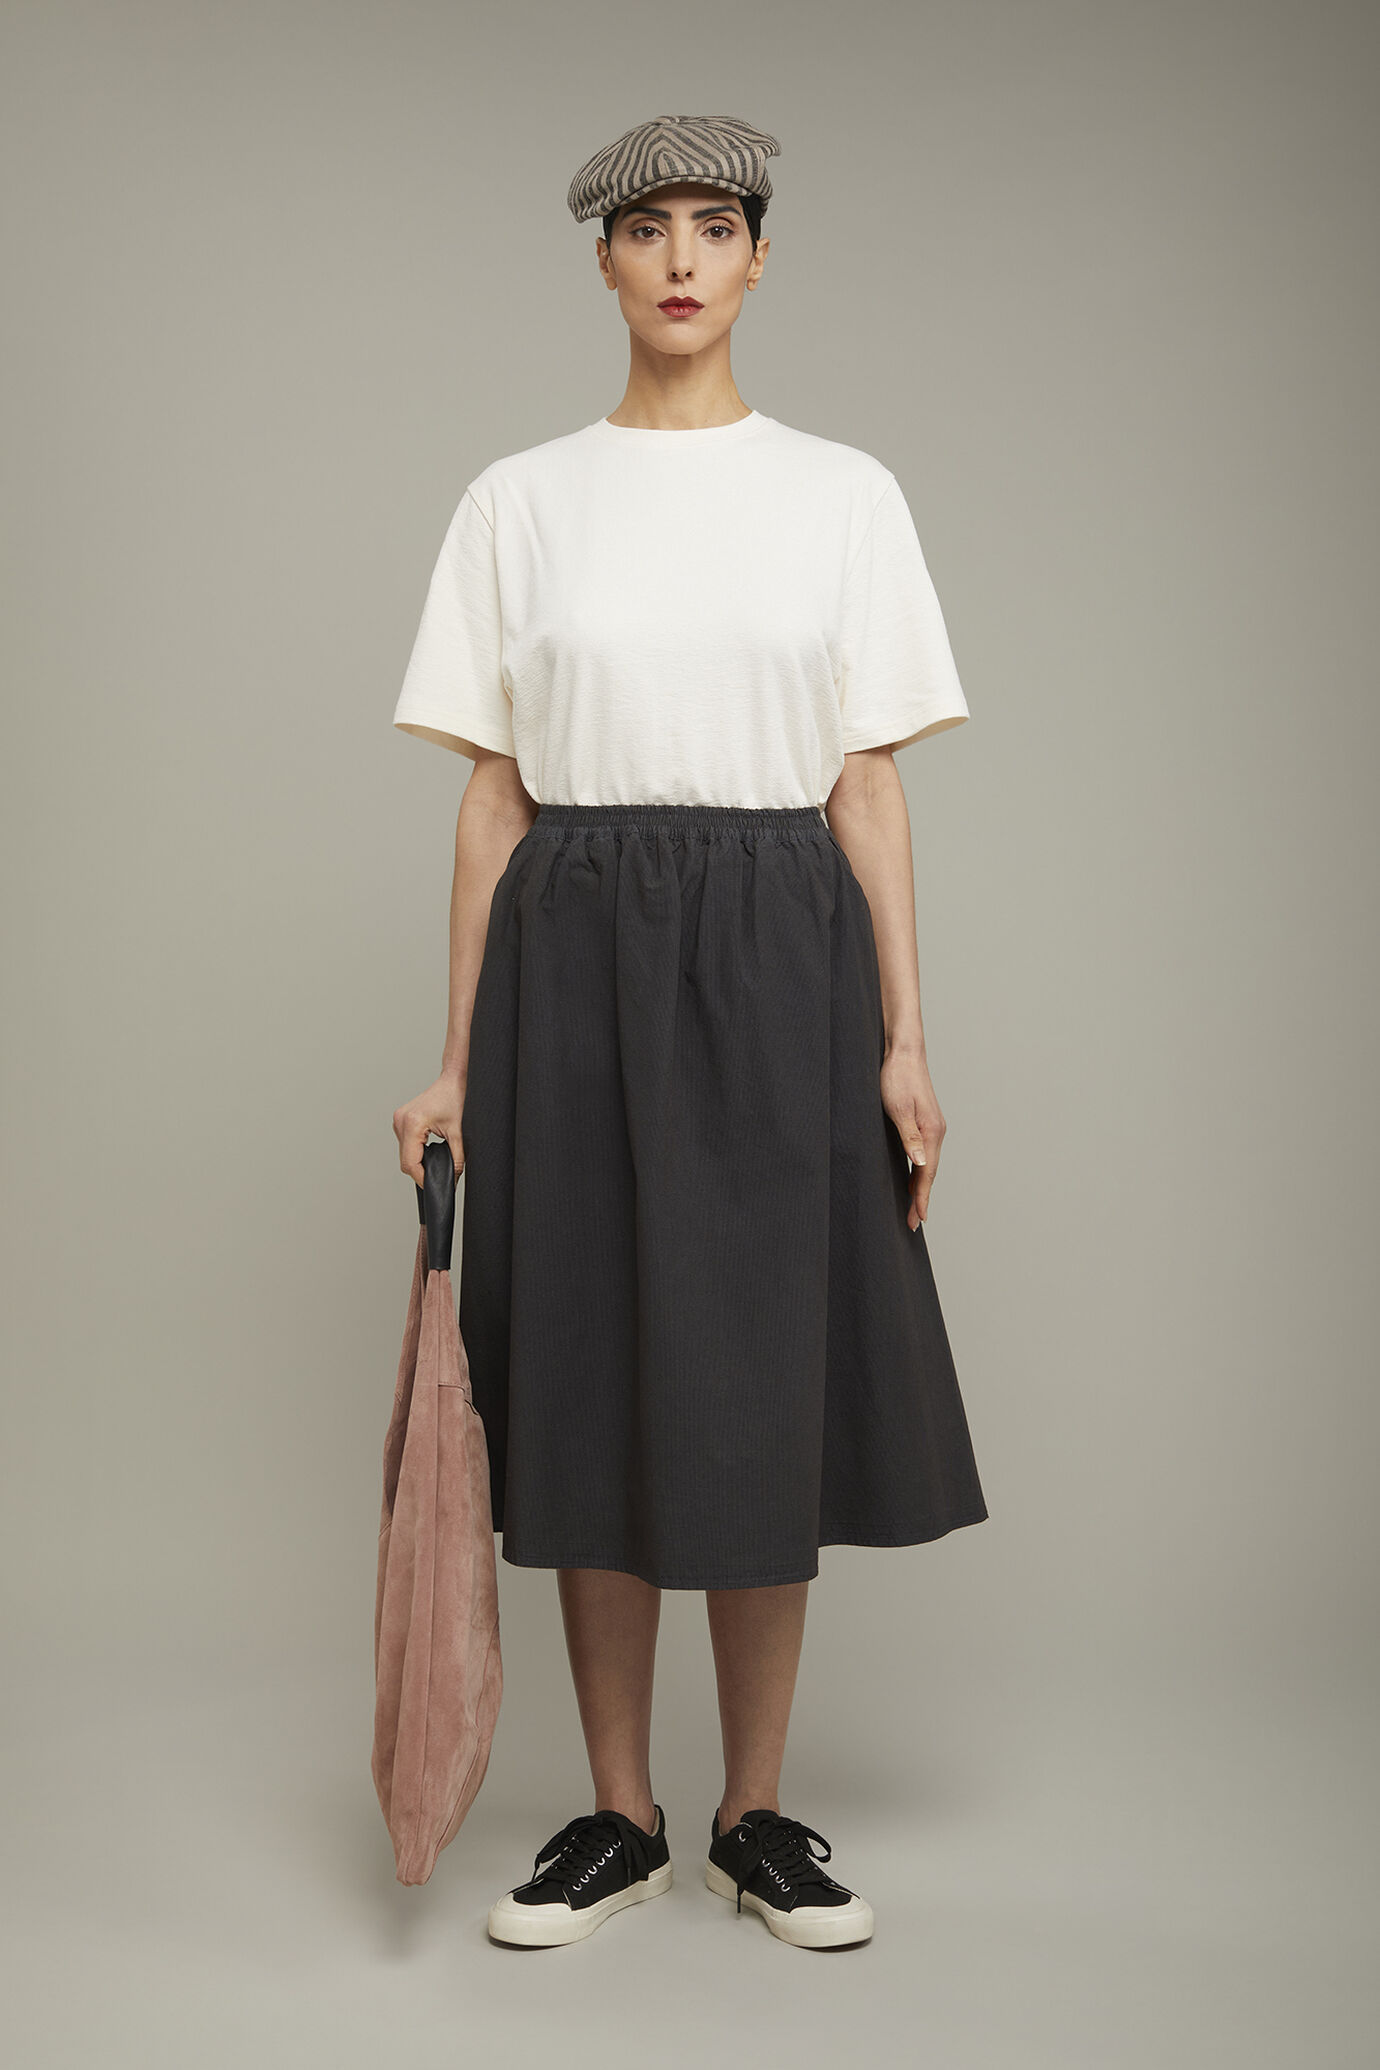 Women’s flared skirt 100% cotton elastic waist microcheck regular fit